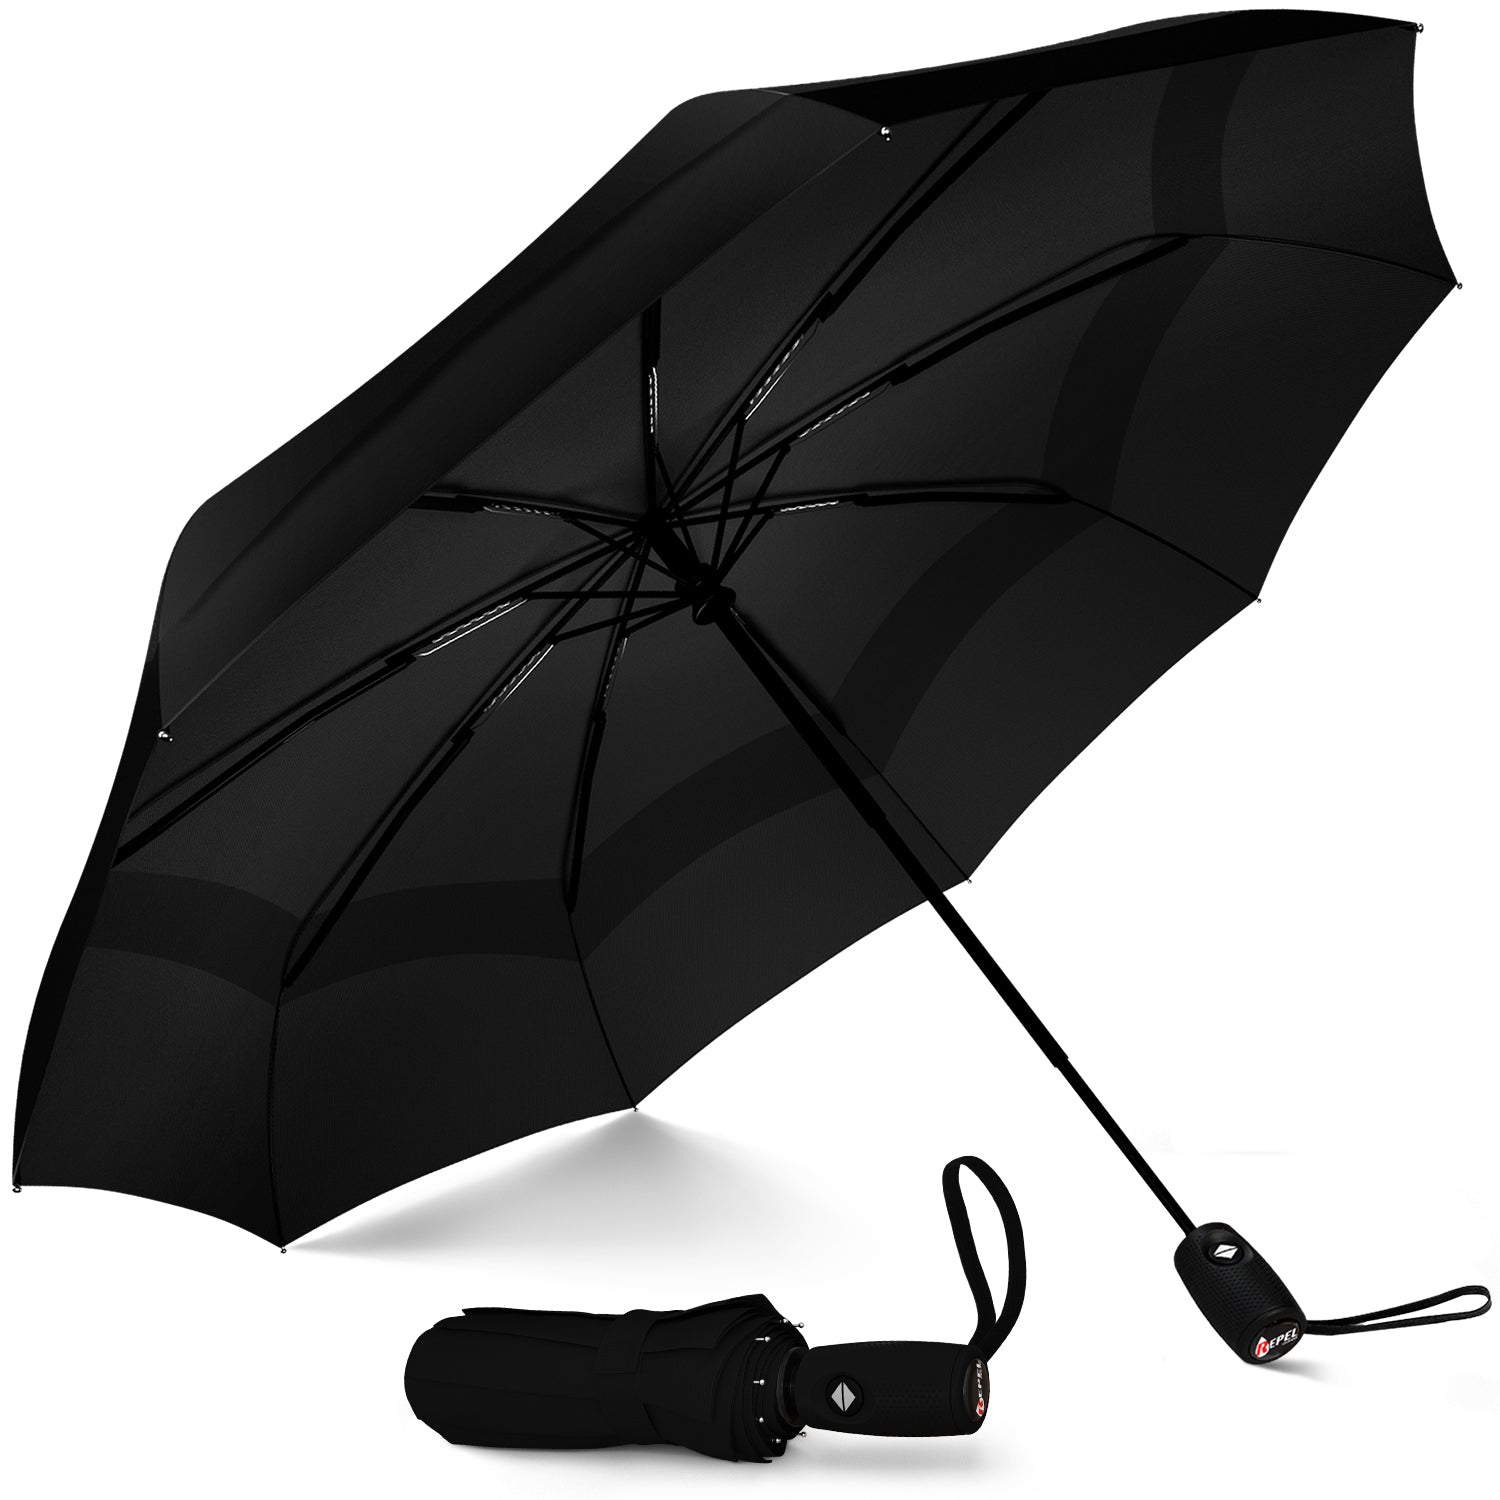 Repel Umbrella | Reverse Umbrellas Golf, Travel